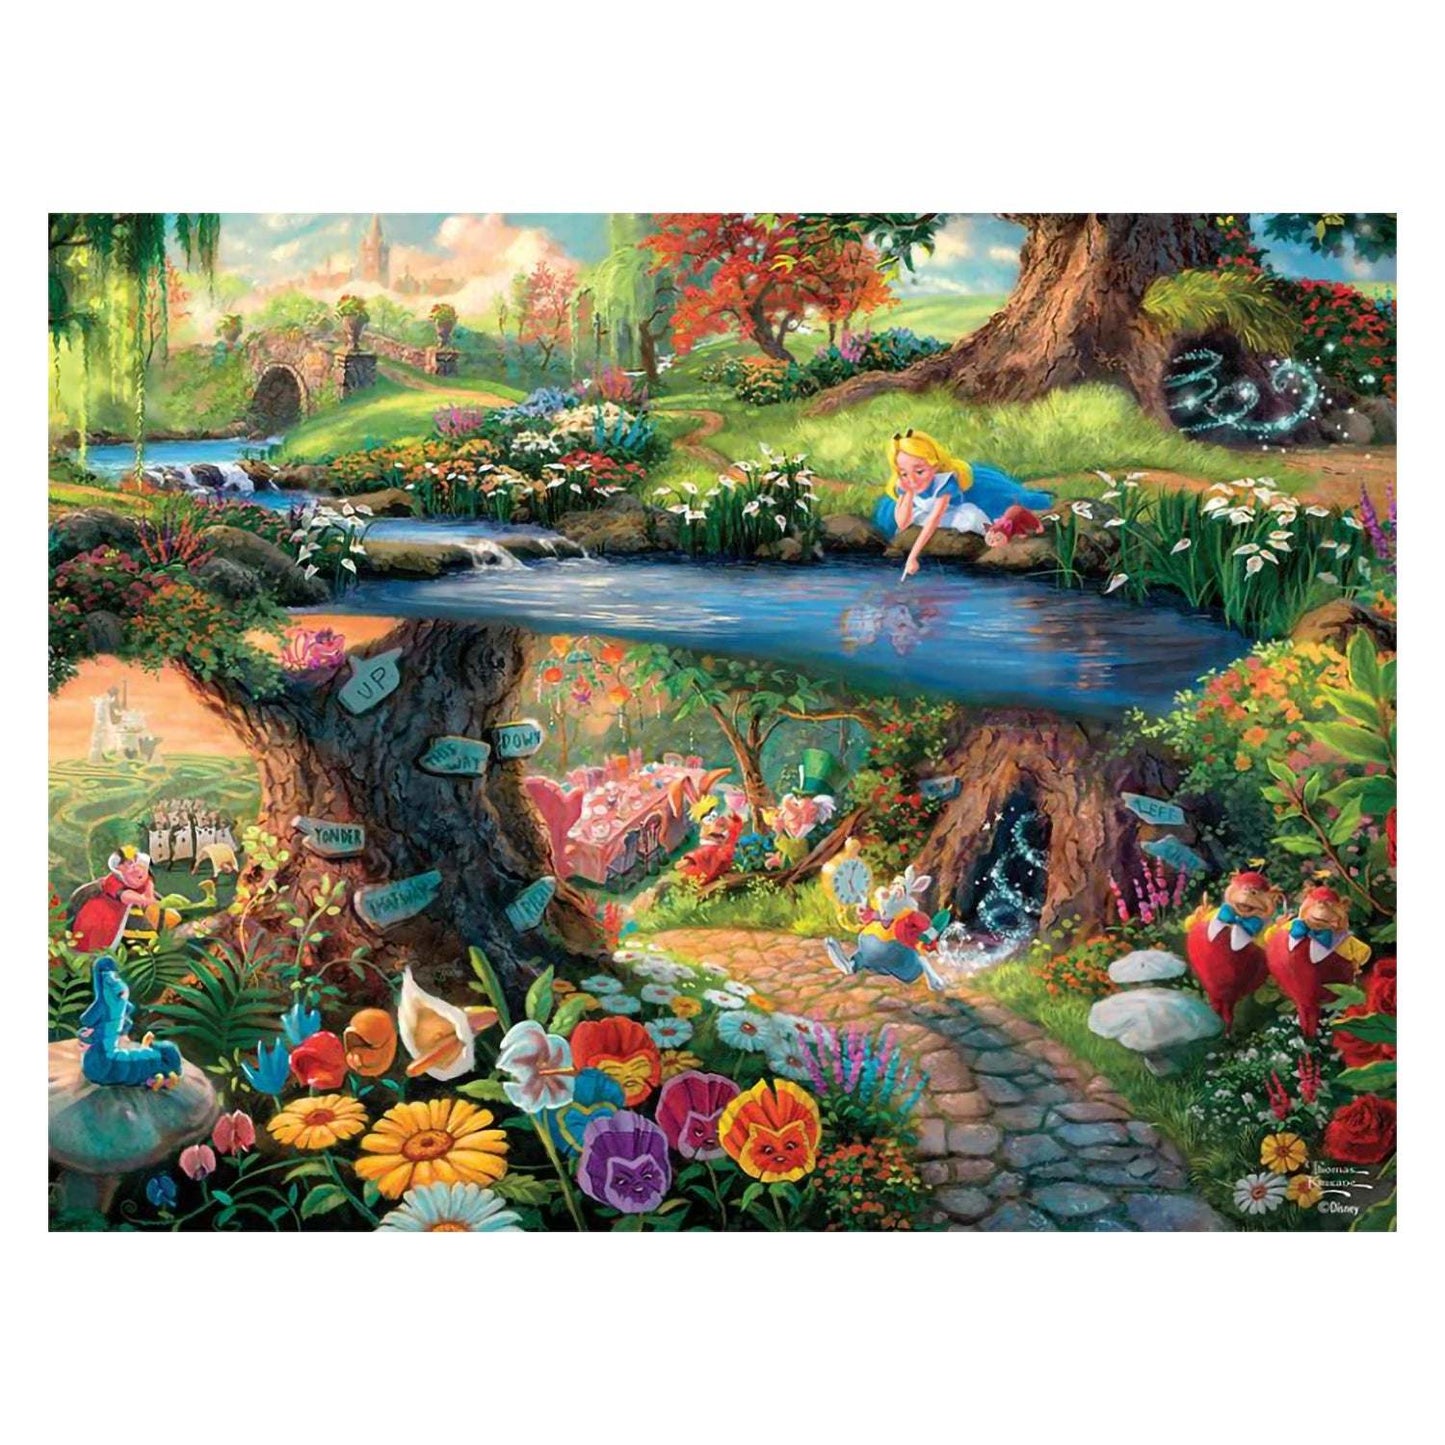 Ceaco Thomas Kinkade Disney Dreams Jigsaw Puzzle - Alice in Wonderland 750 Pieces